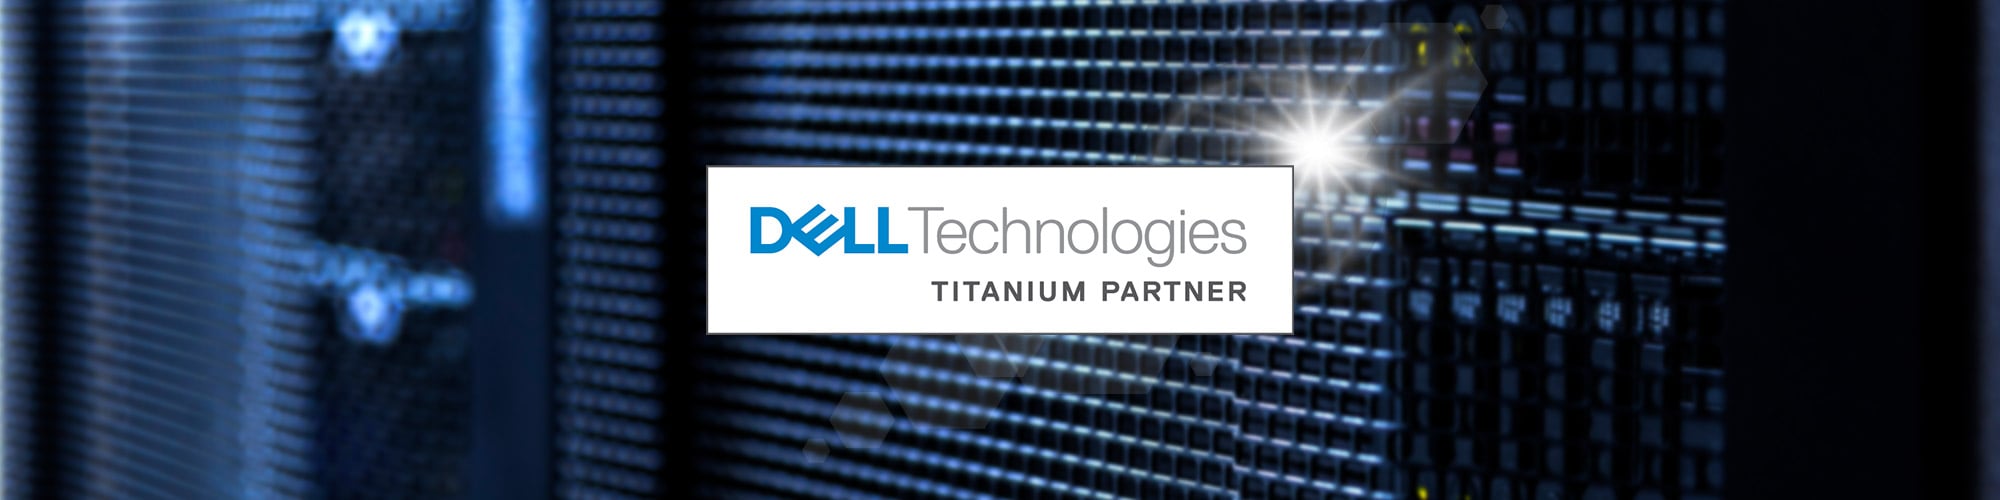 Phoenix Achieve Dell Technologies Titanium Partner Status